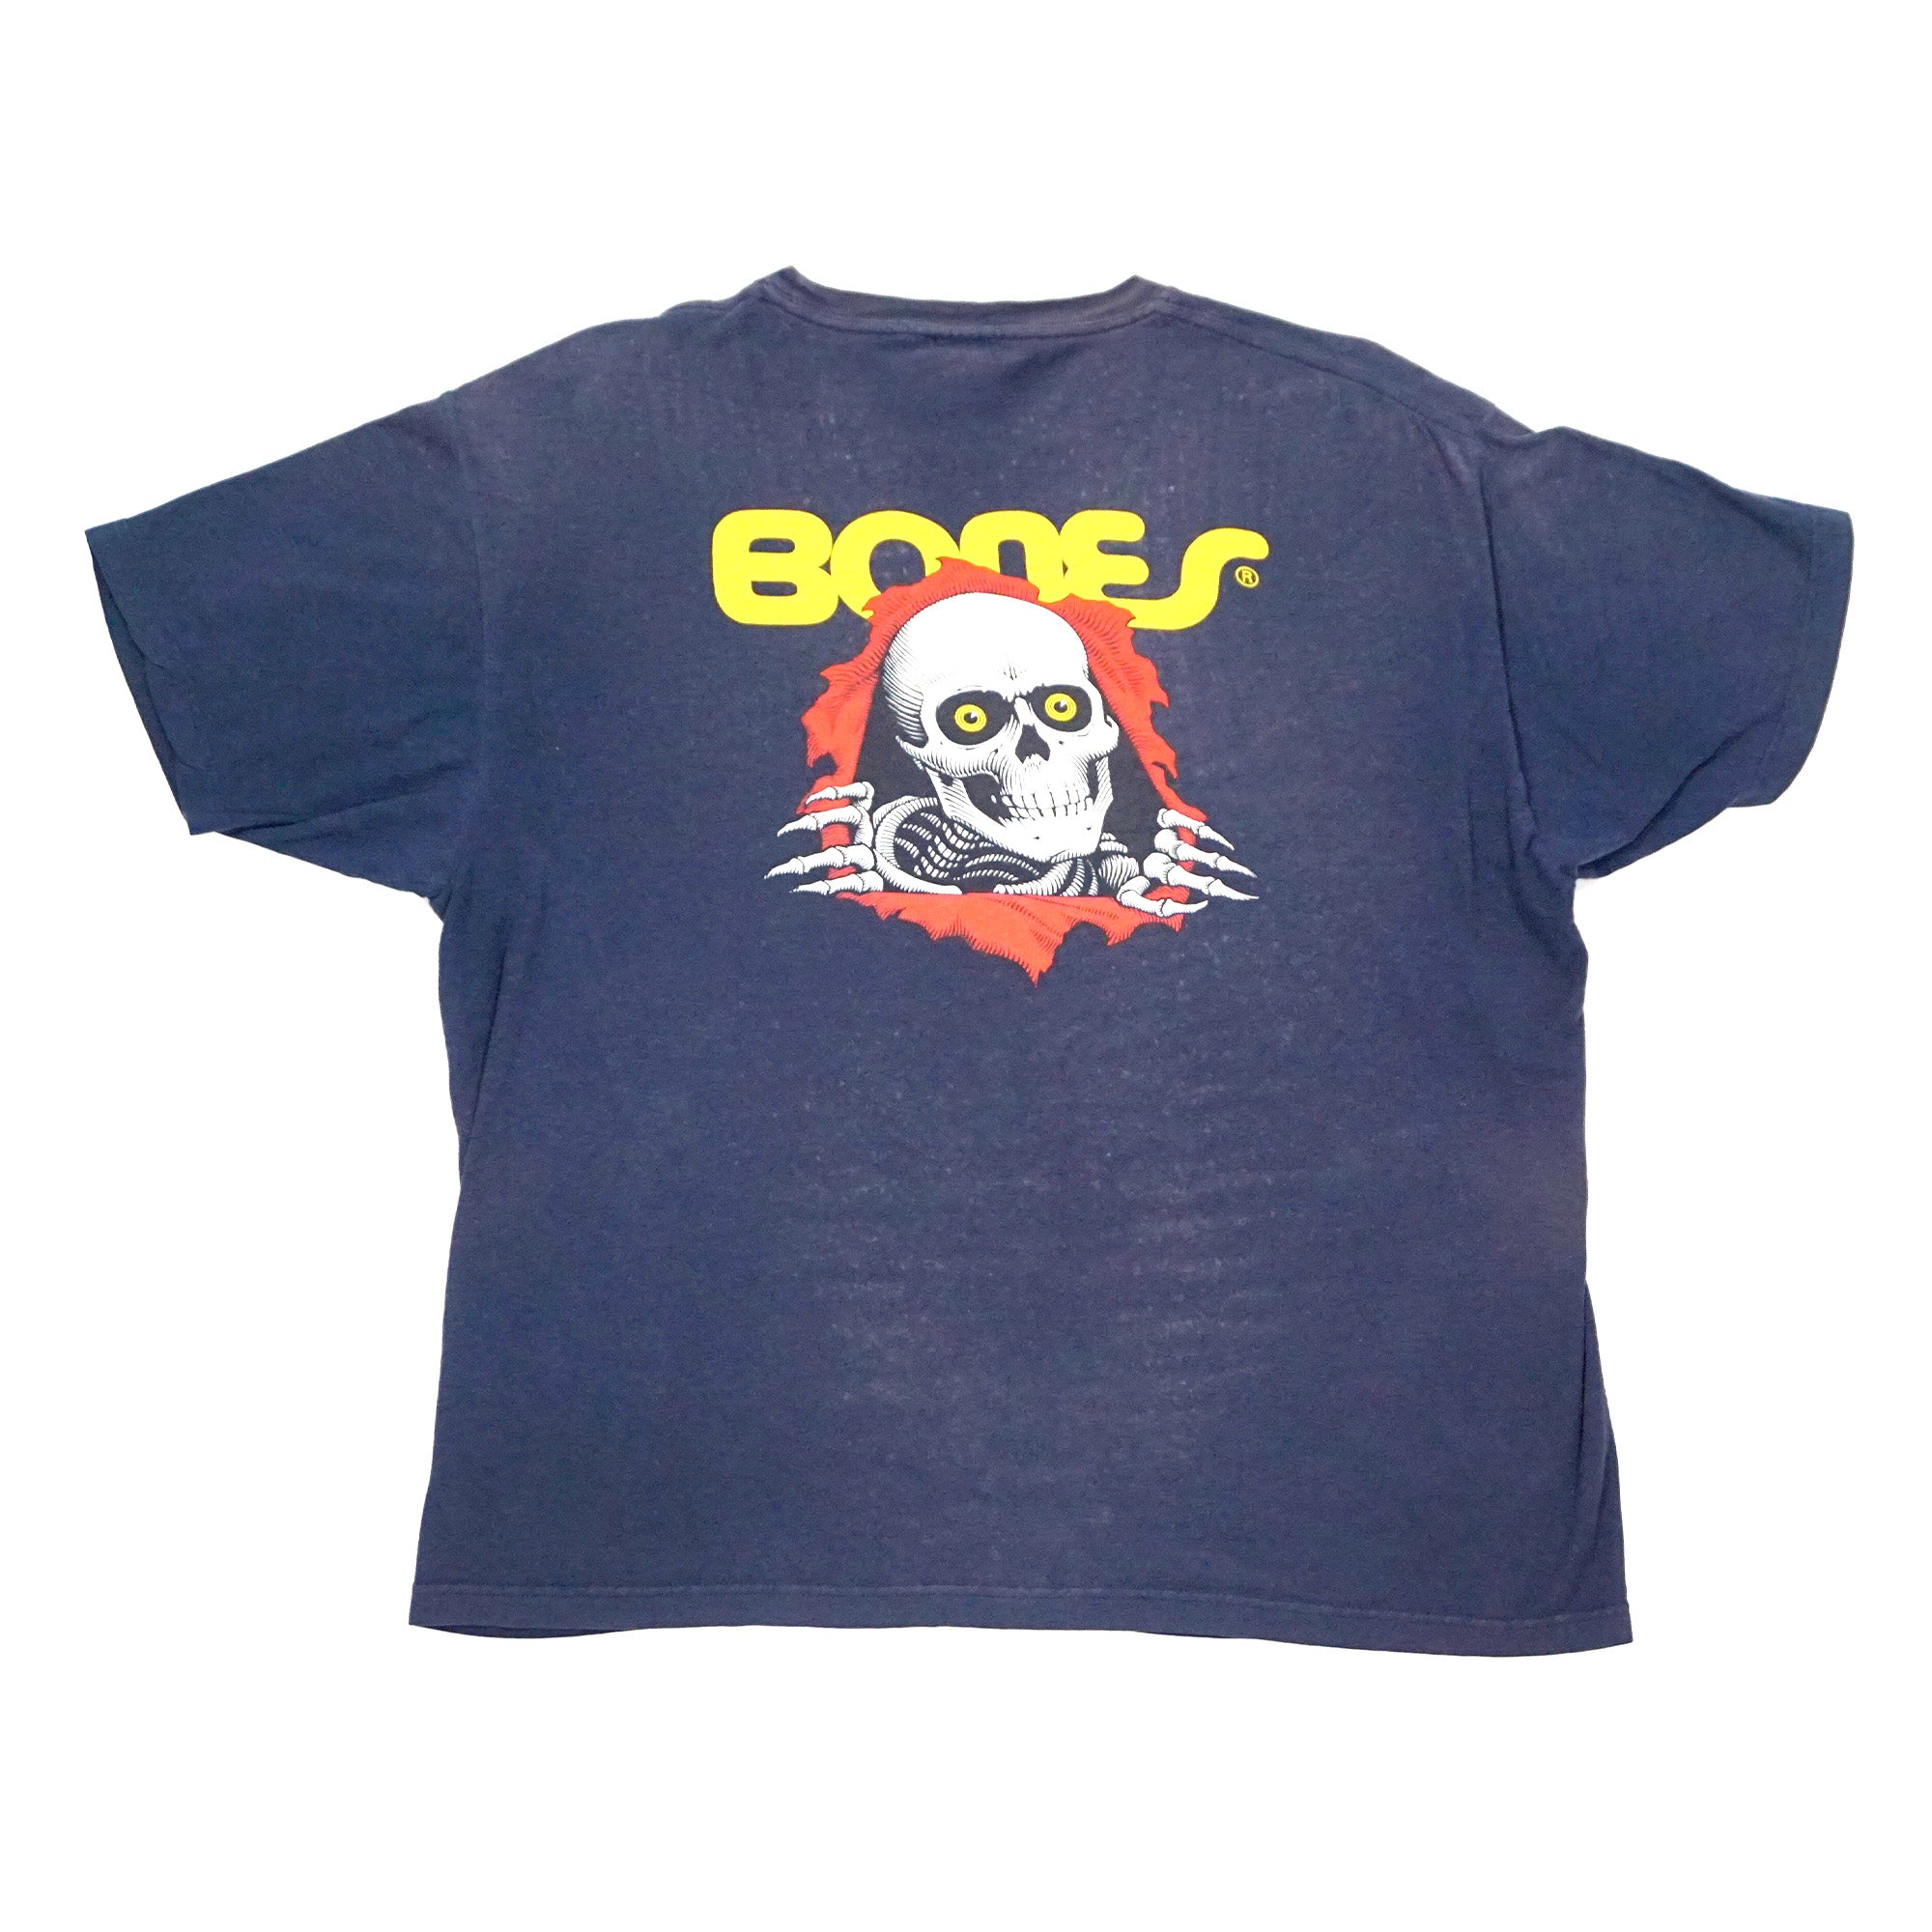 Powell Peralta - Original Ripper Reissue Shirt (XL)